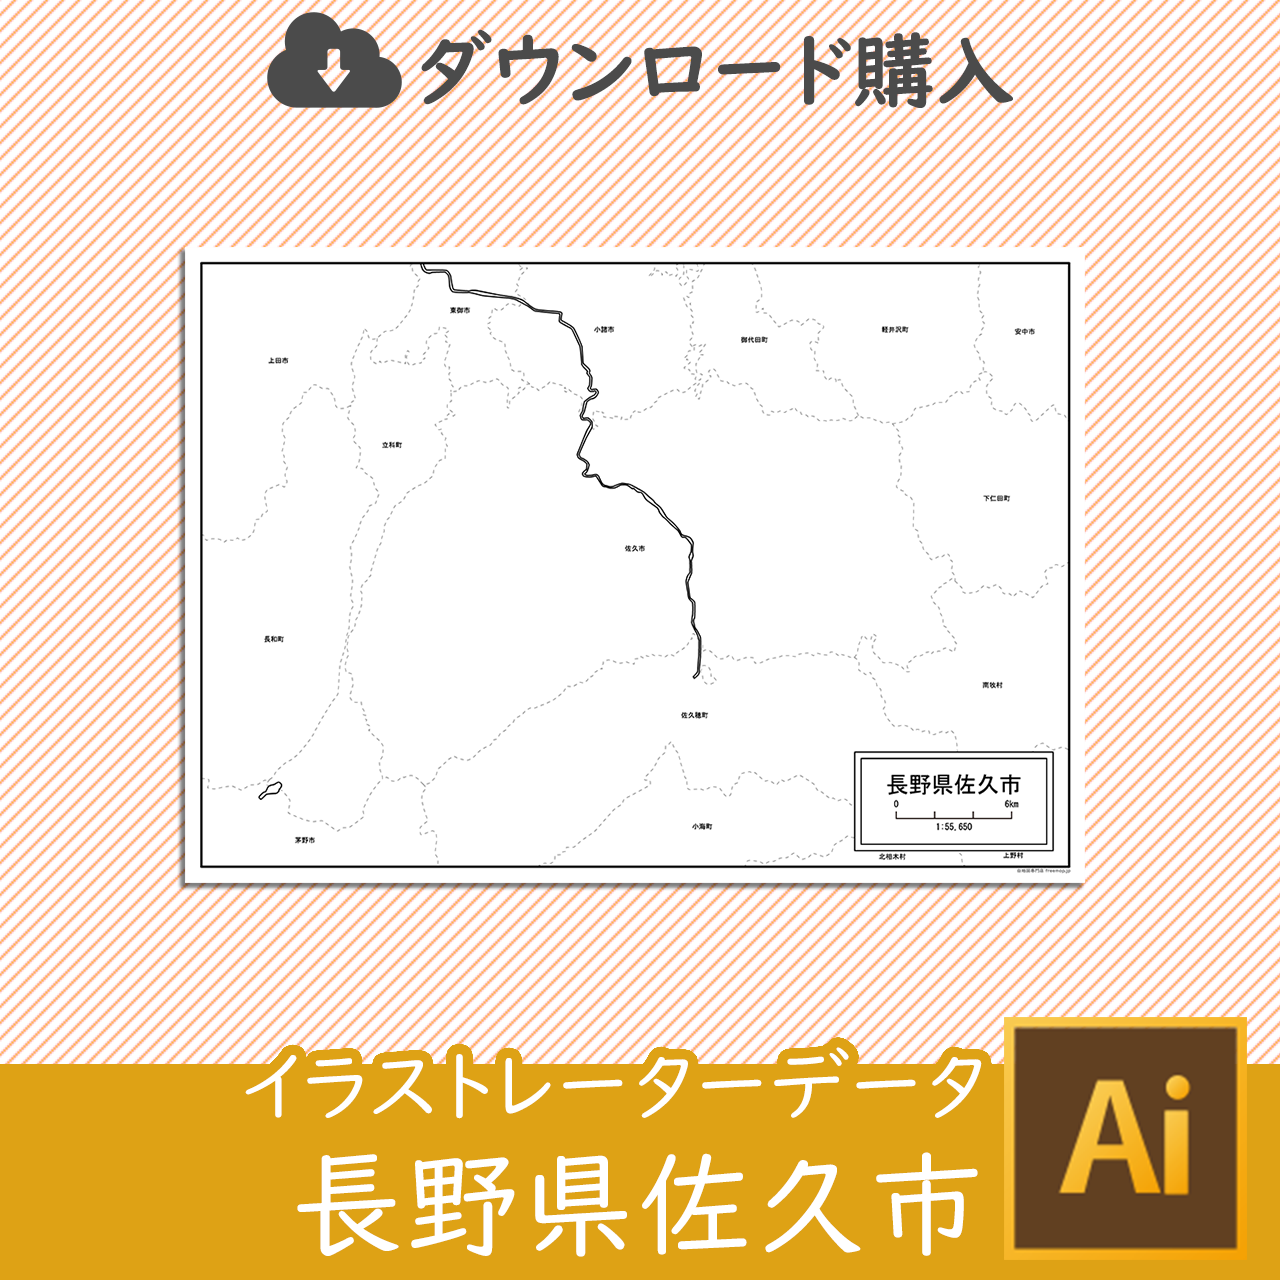 佐久市のaiデータのサムネイル画像